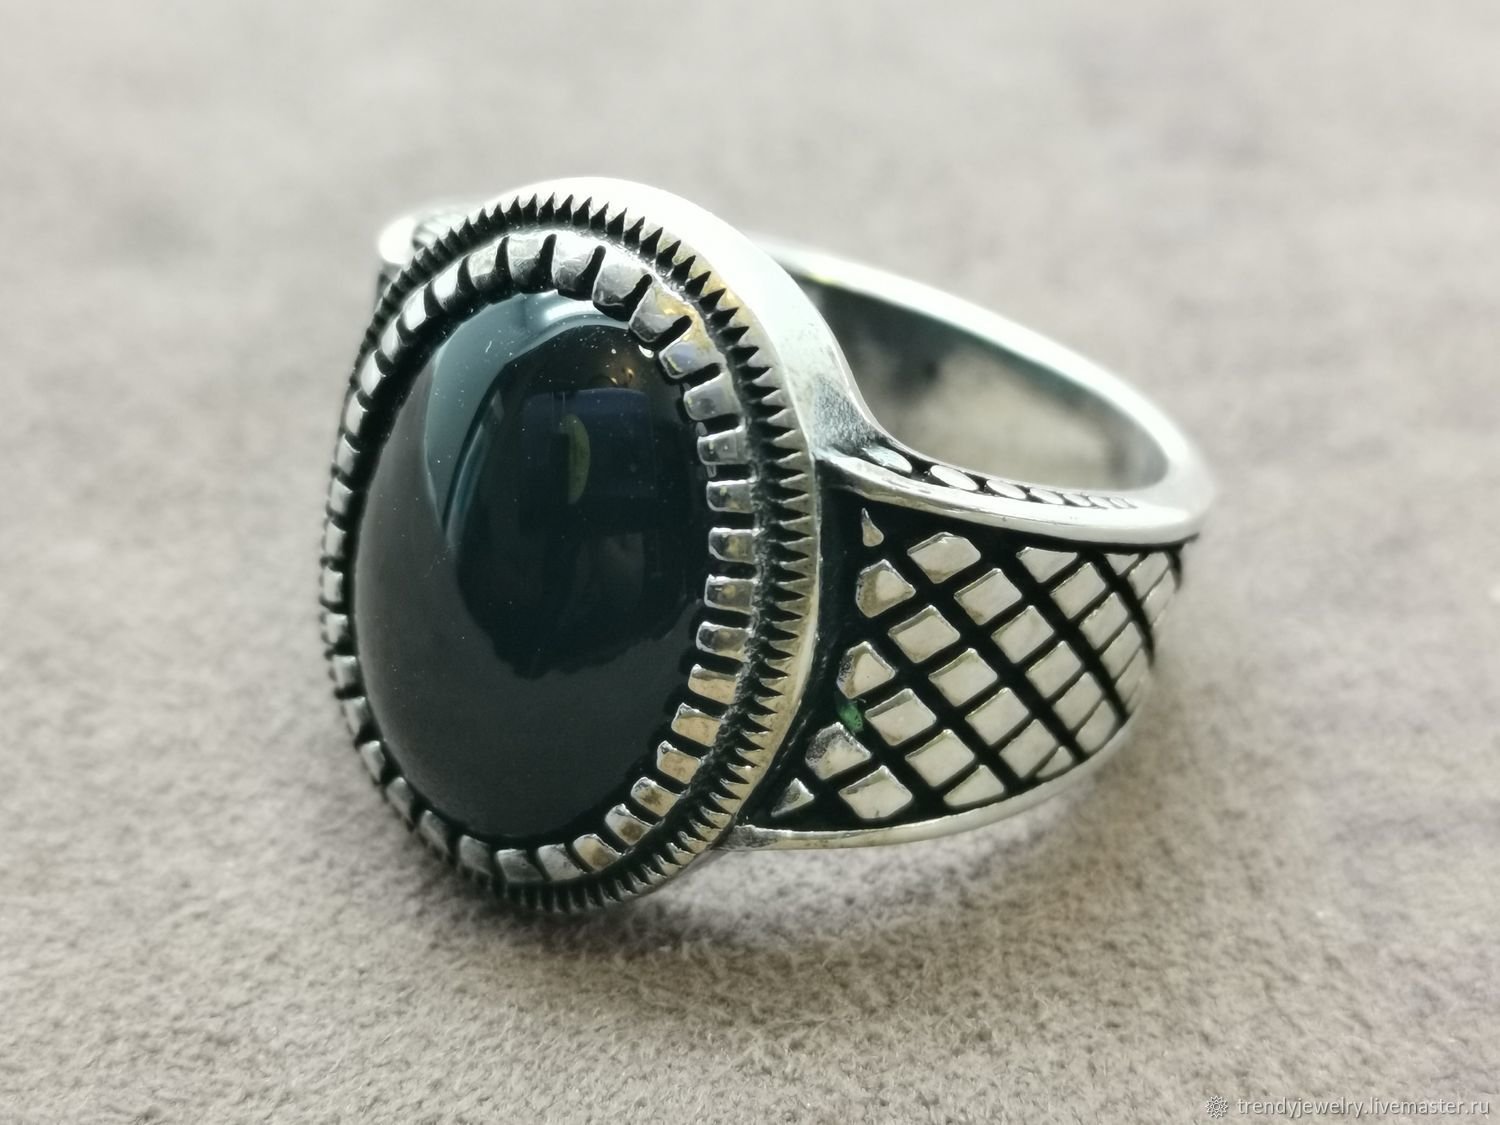 Перстни мужские серебро с камнями. Перстень Вирджинии Олдони. Перстень Готланд агат. 537 Перстень серебро с агатом. Печатка агат перстень кольцо.